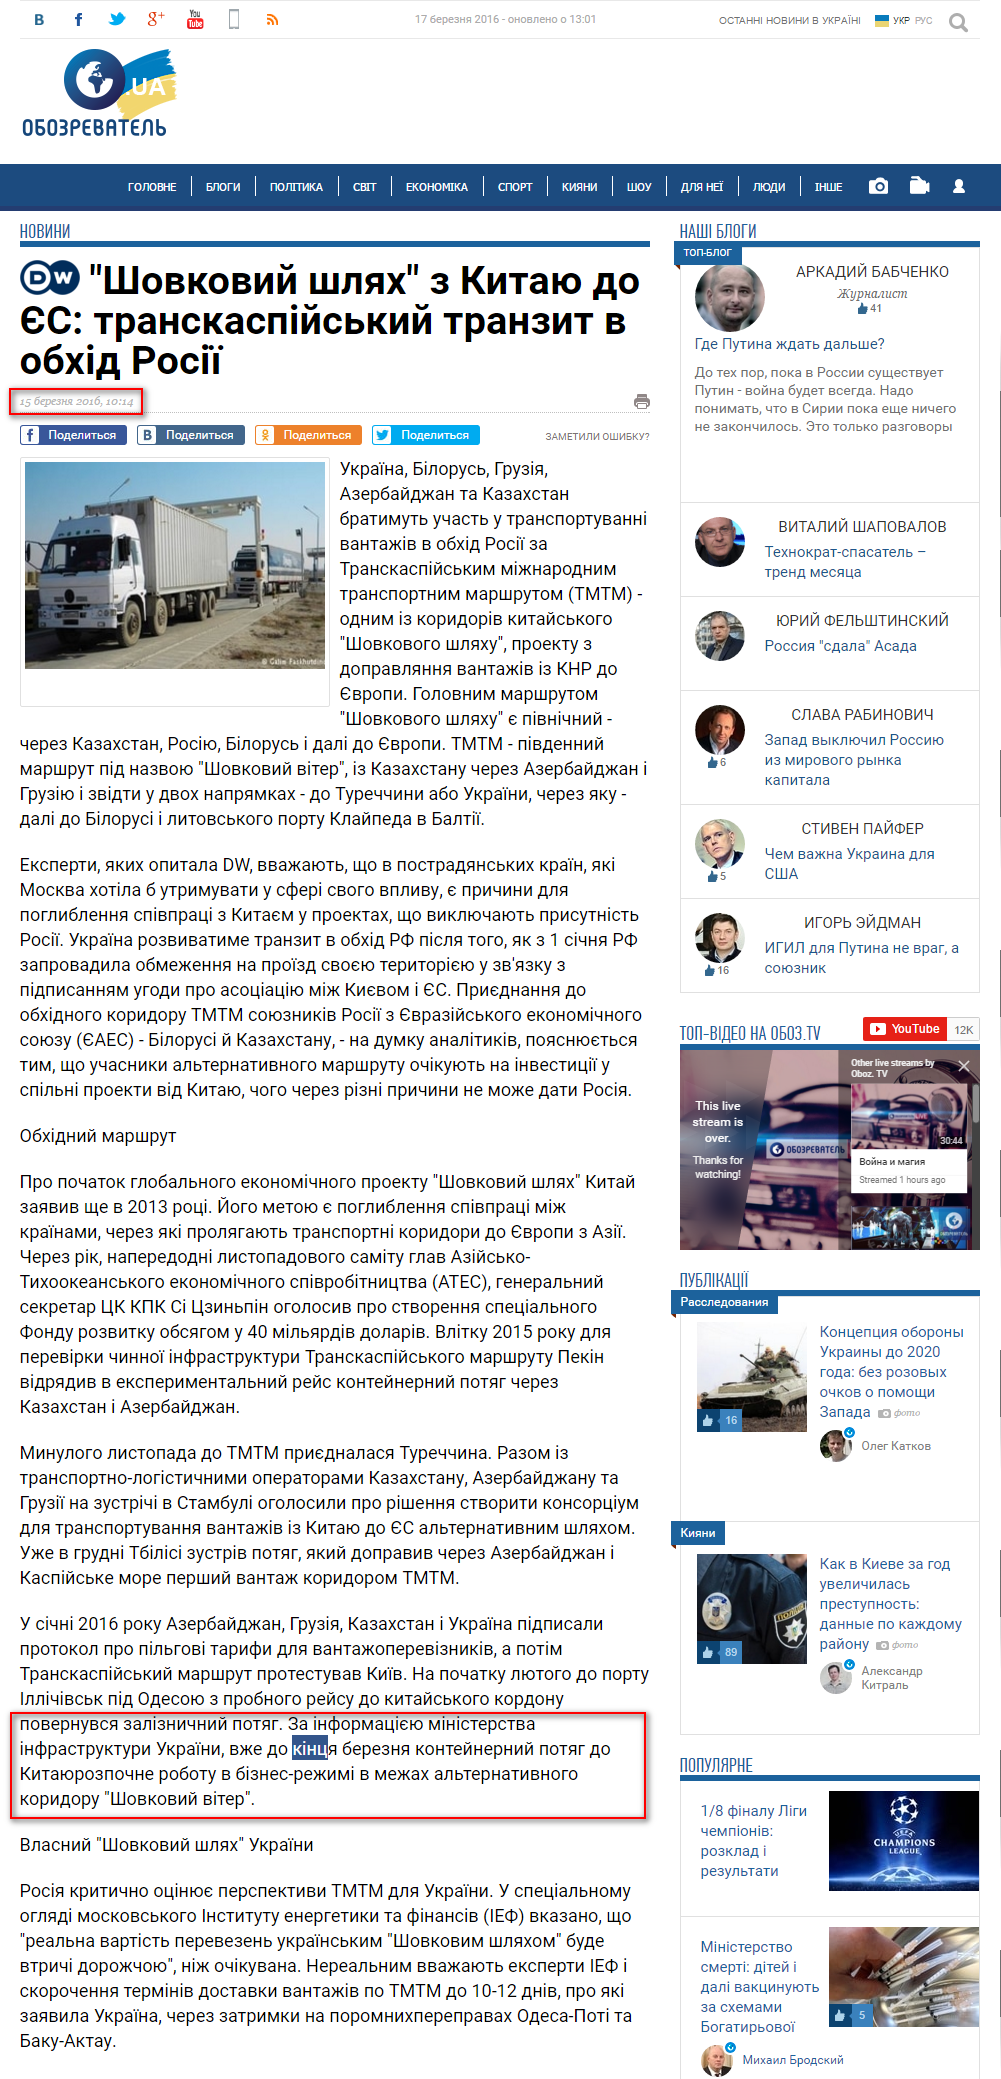 http://ukr.obozrevatel.com/news/25930-shovkovij-shlyah-z-kitayu-do-es-transkaspijskij-tranzit-v-obhid-rosii.htm